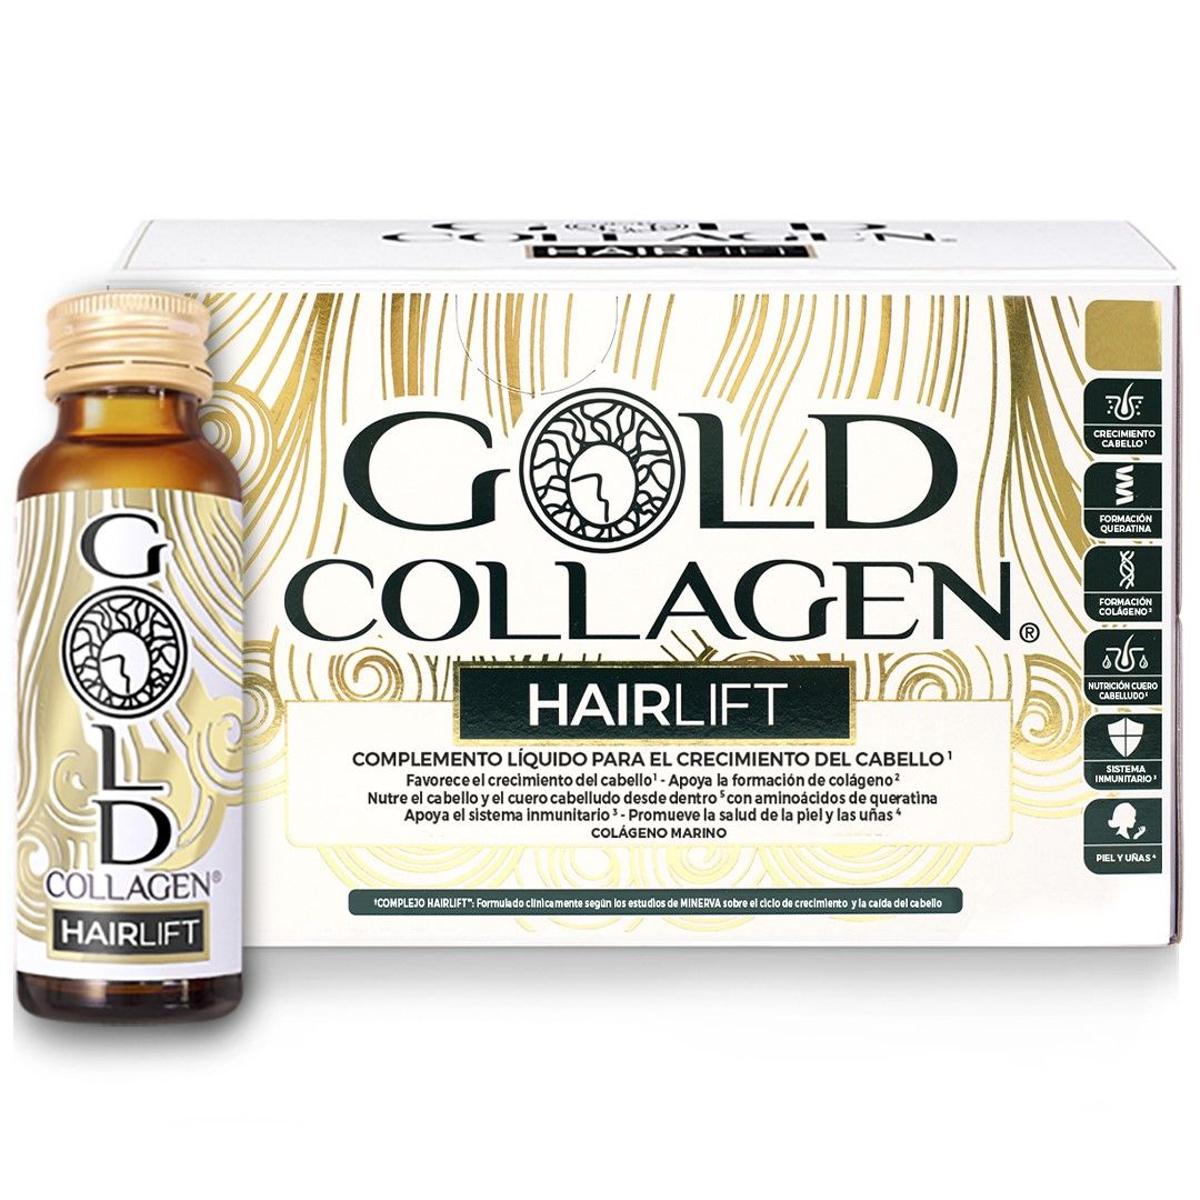 Gold Collagen HAIRLIFT box